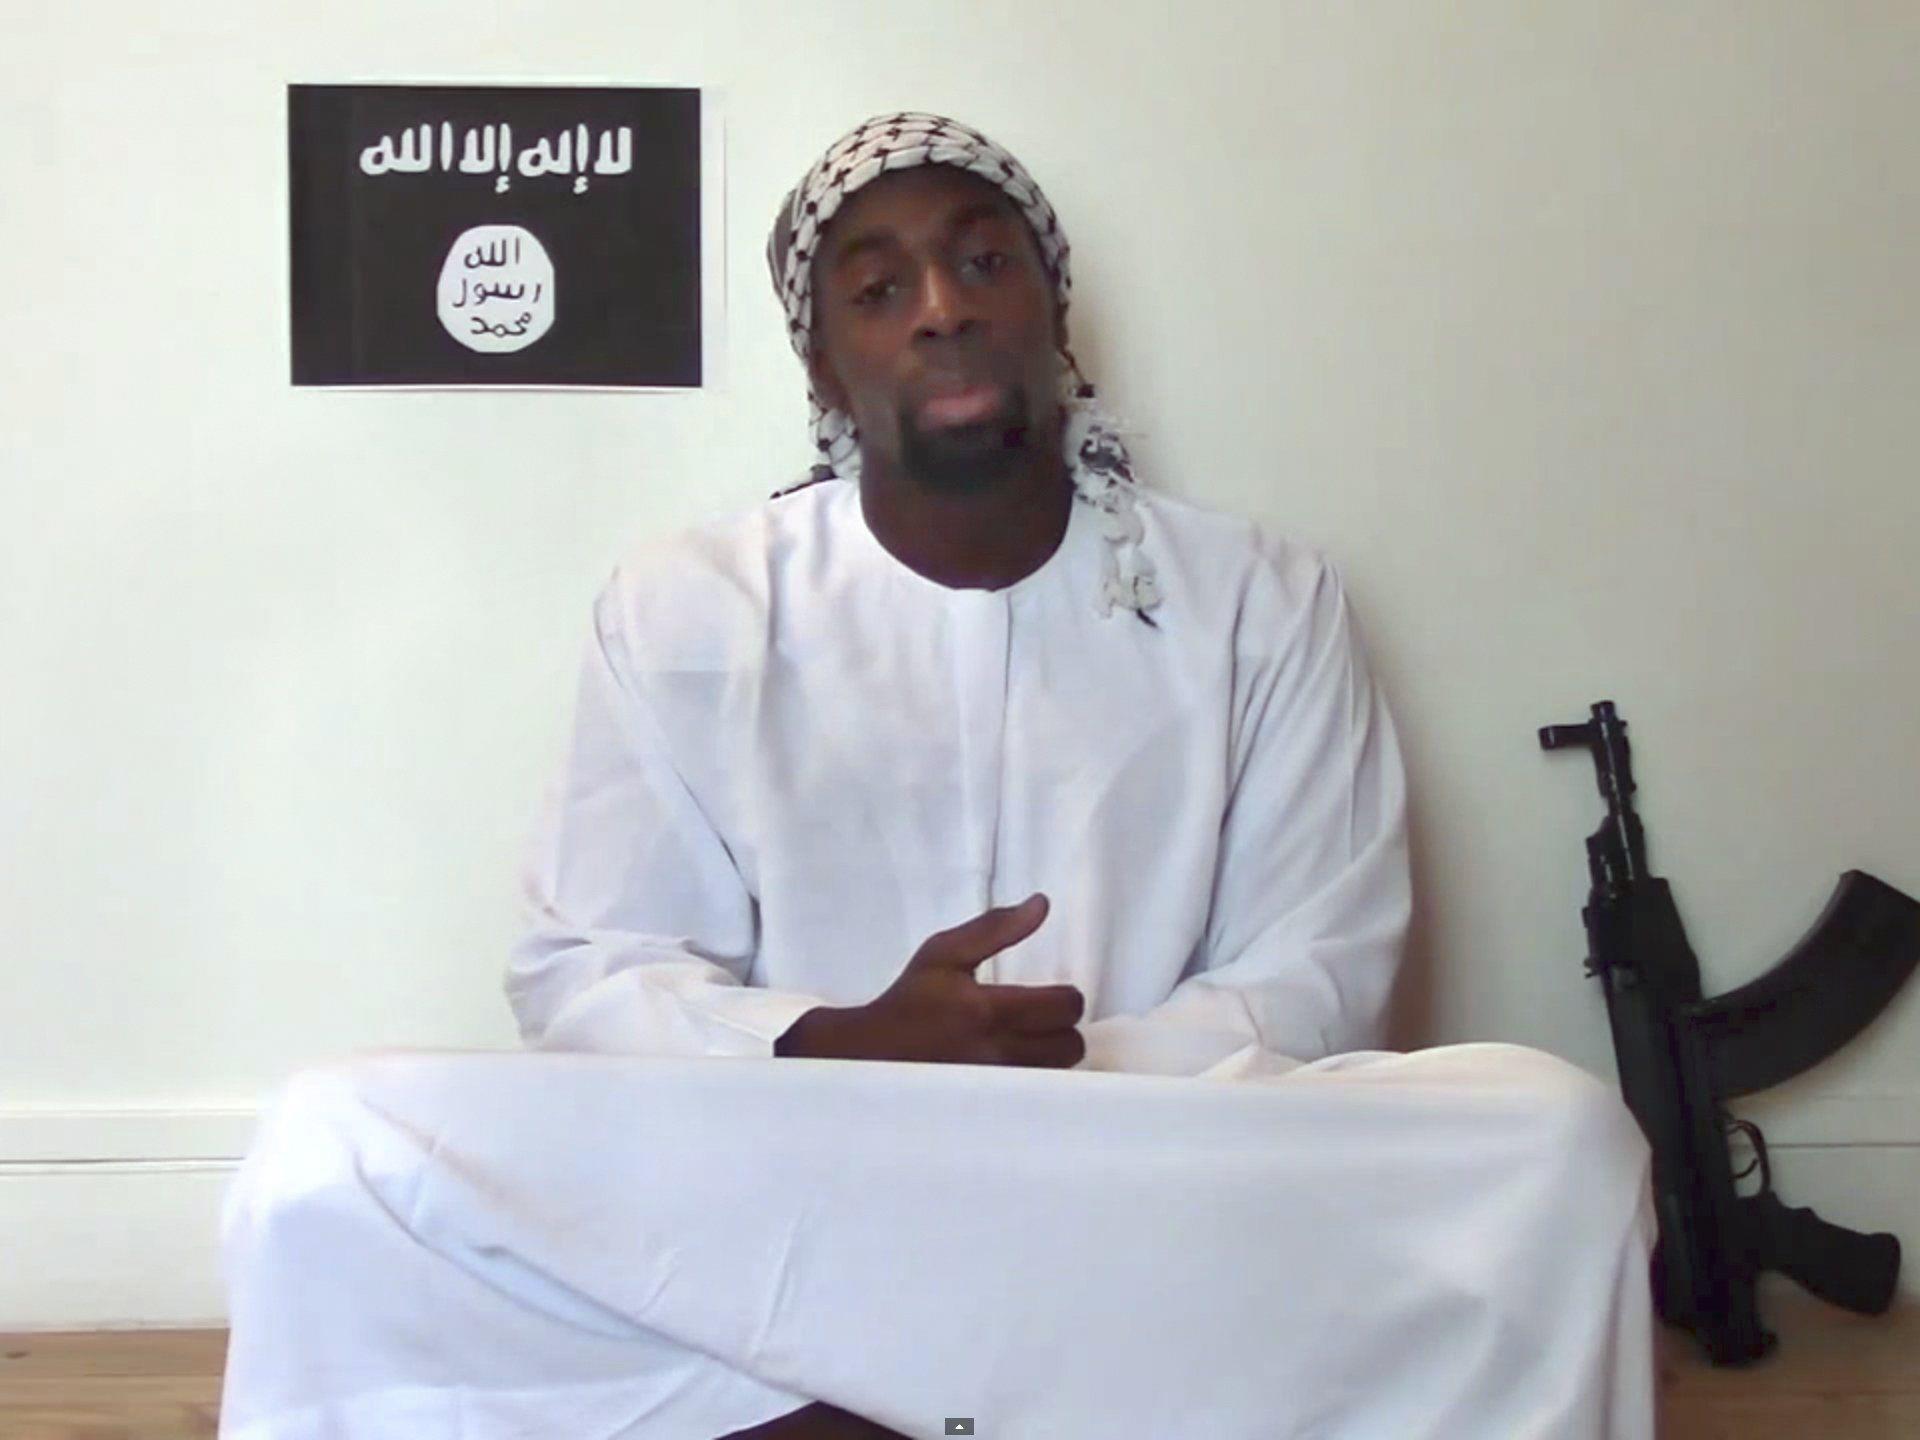 Bekenntnis zu Anschlag in Frankreich im Namen von IS-Miliz.